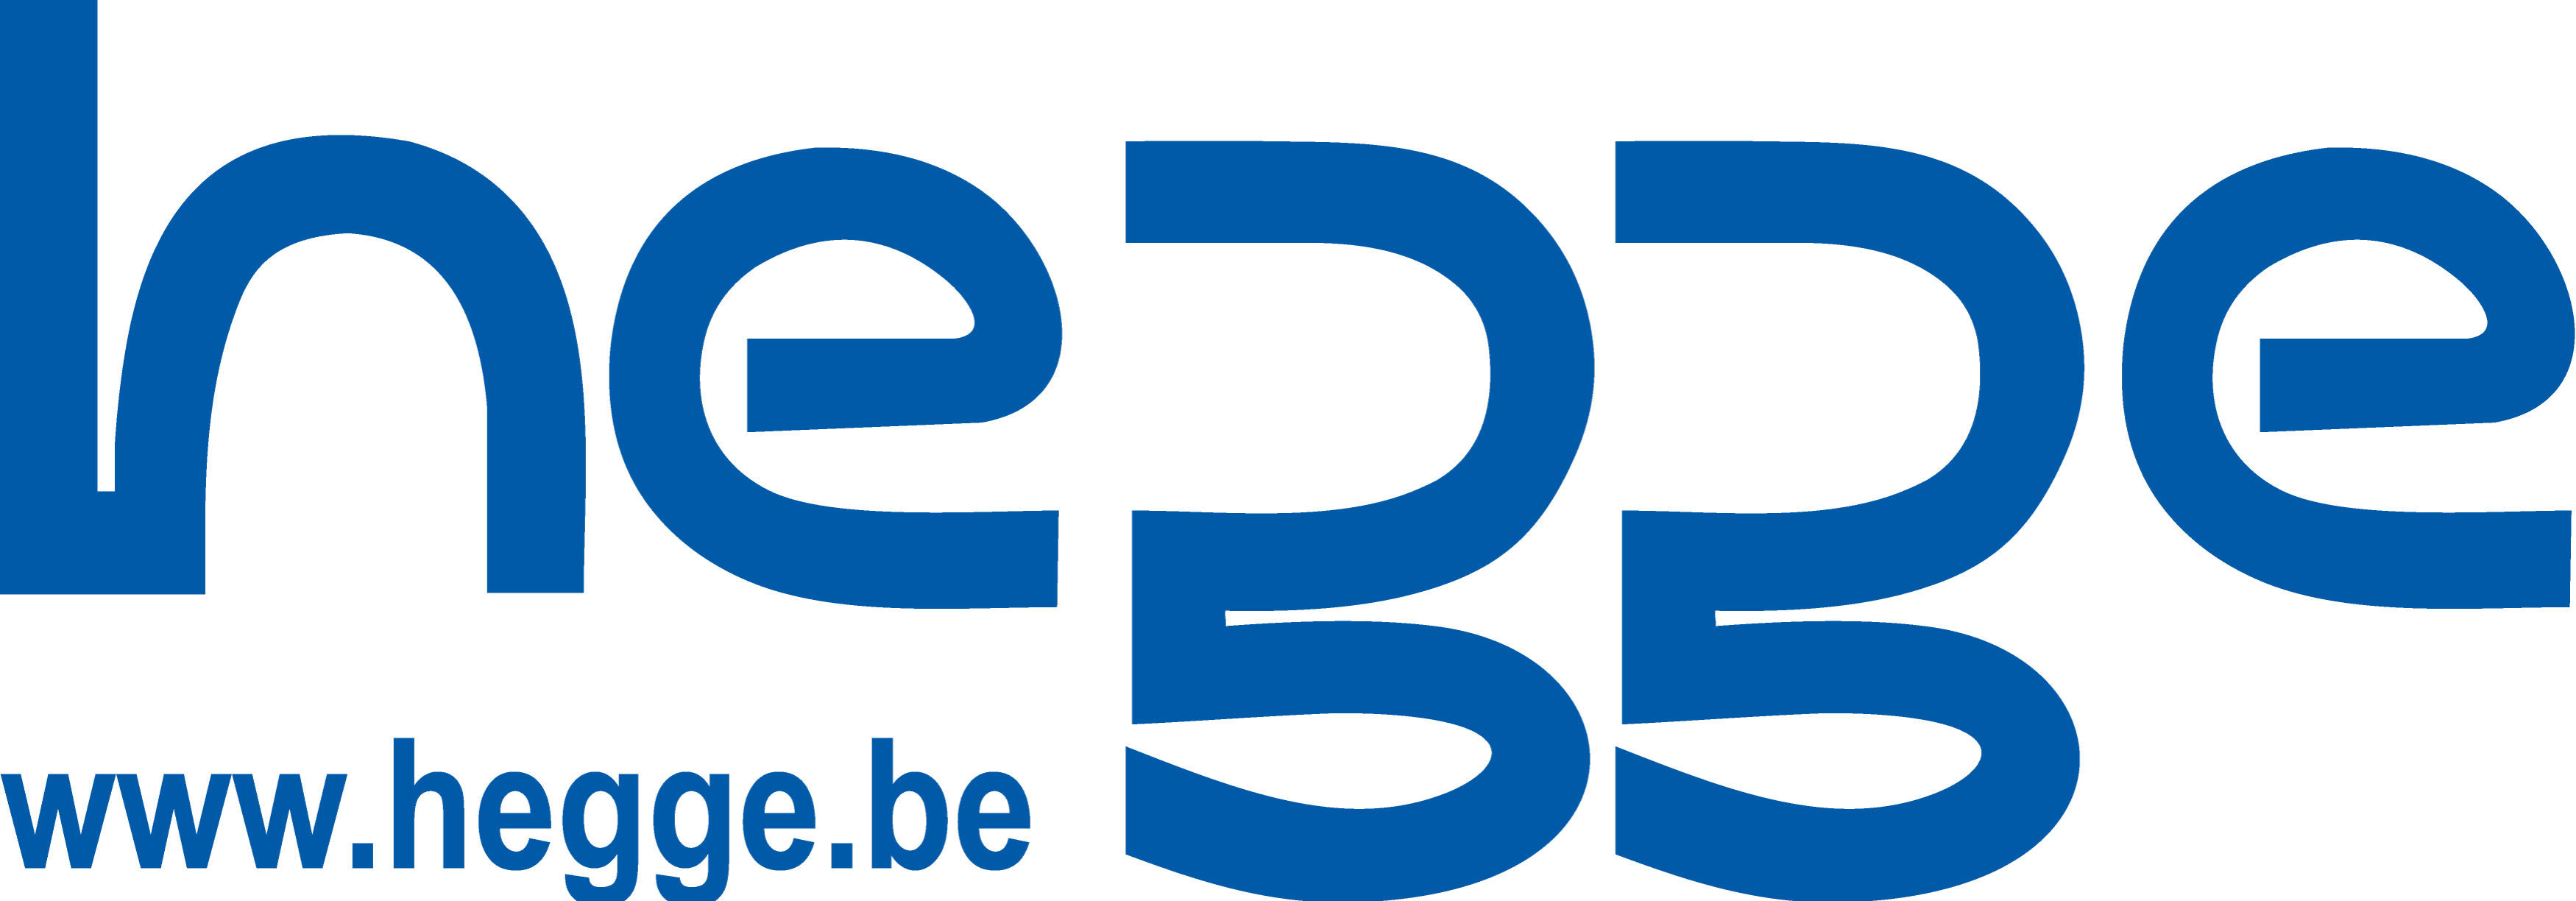 Hegge  Group logo